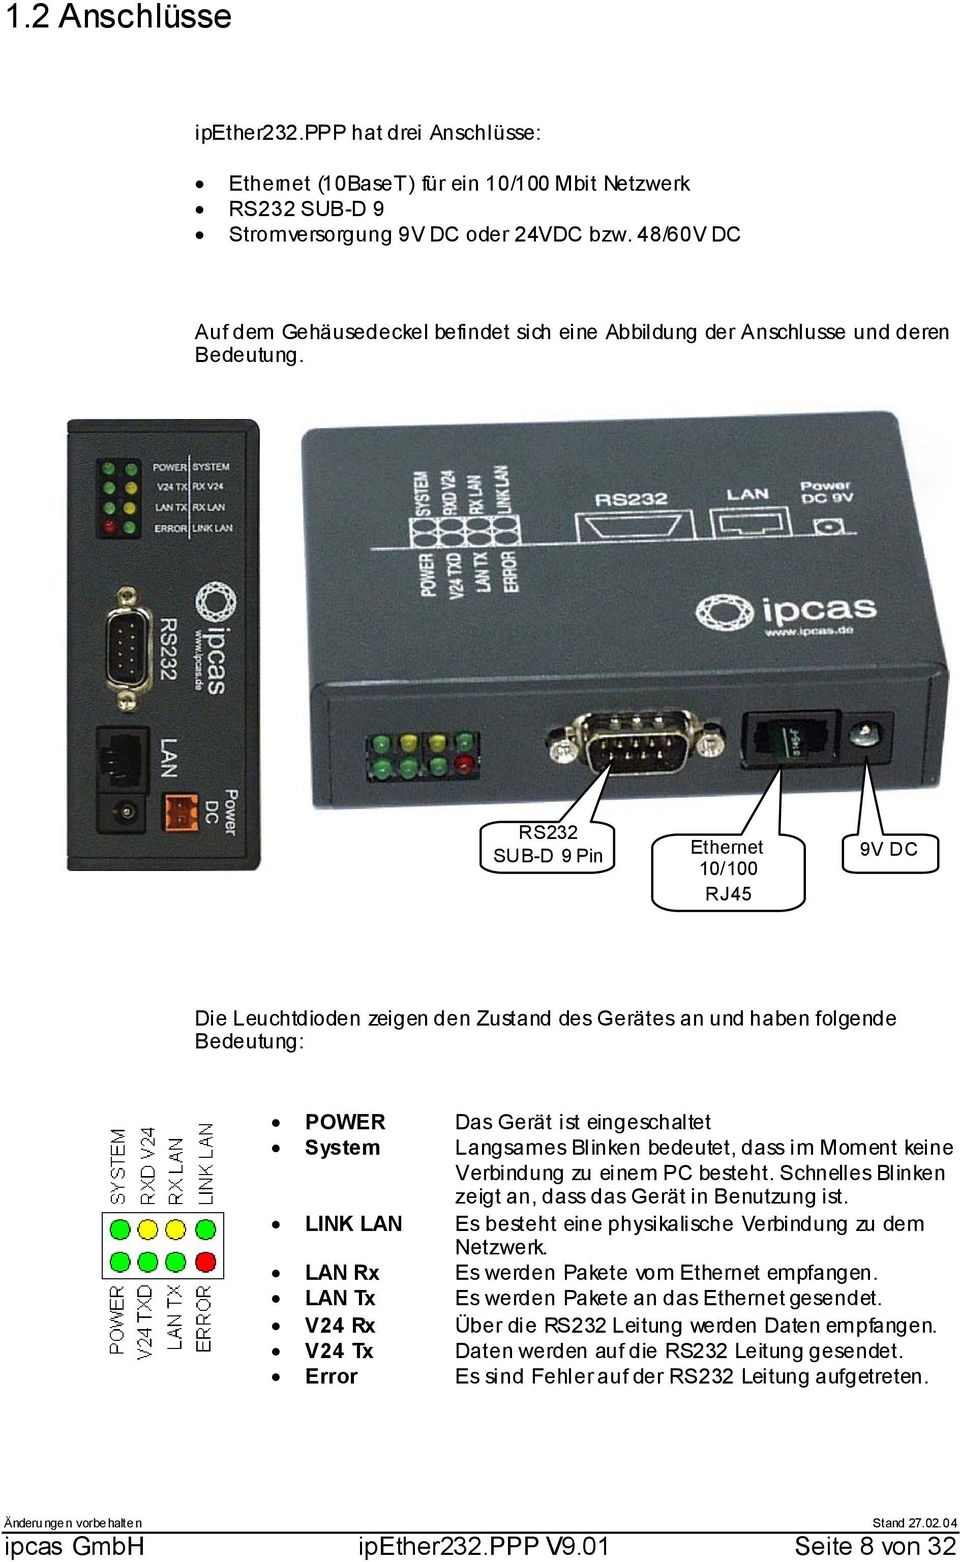 RS232 SUB-D 9 Pin Ethernet 10/100 RJ45 9V DC Die Leuchtdioden zeigen den Zustand des Gerätes an und haben folgende Bedeutung: POWER Das Gerät ist eingeschaltet System Langsames Blinken bedeutet, dass